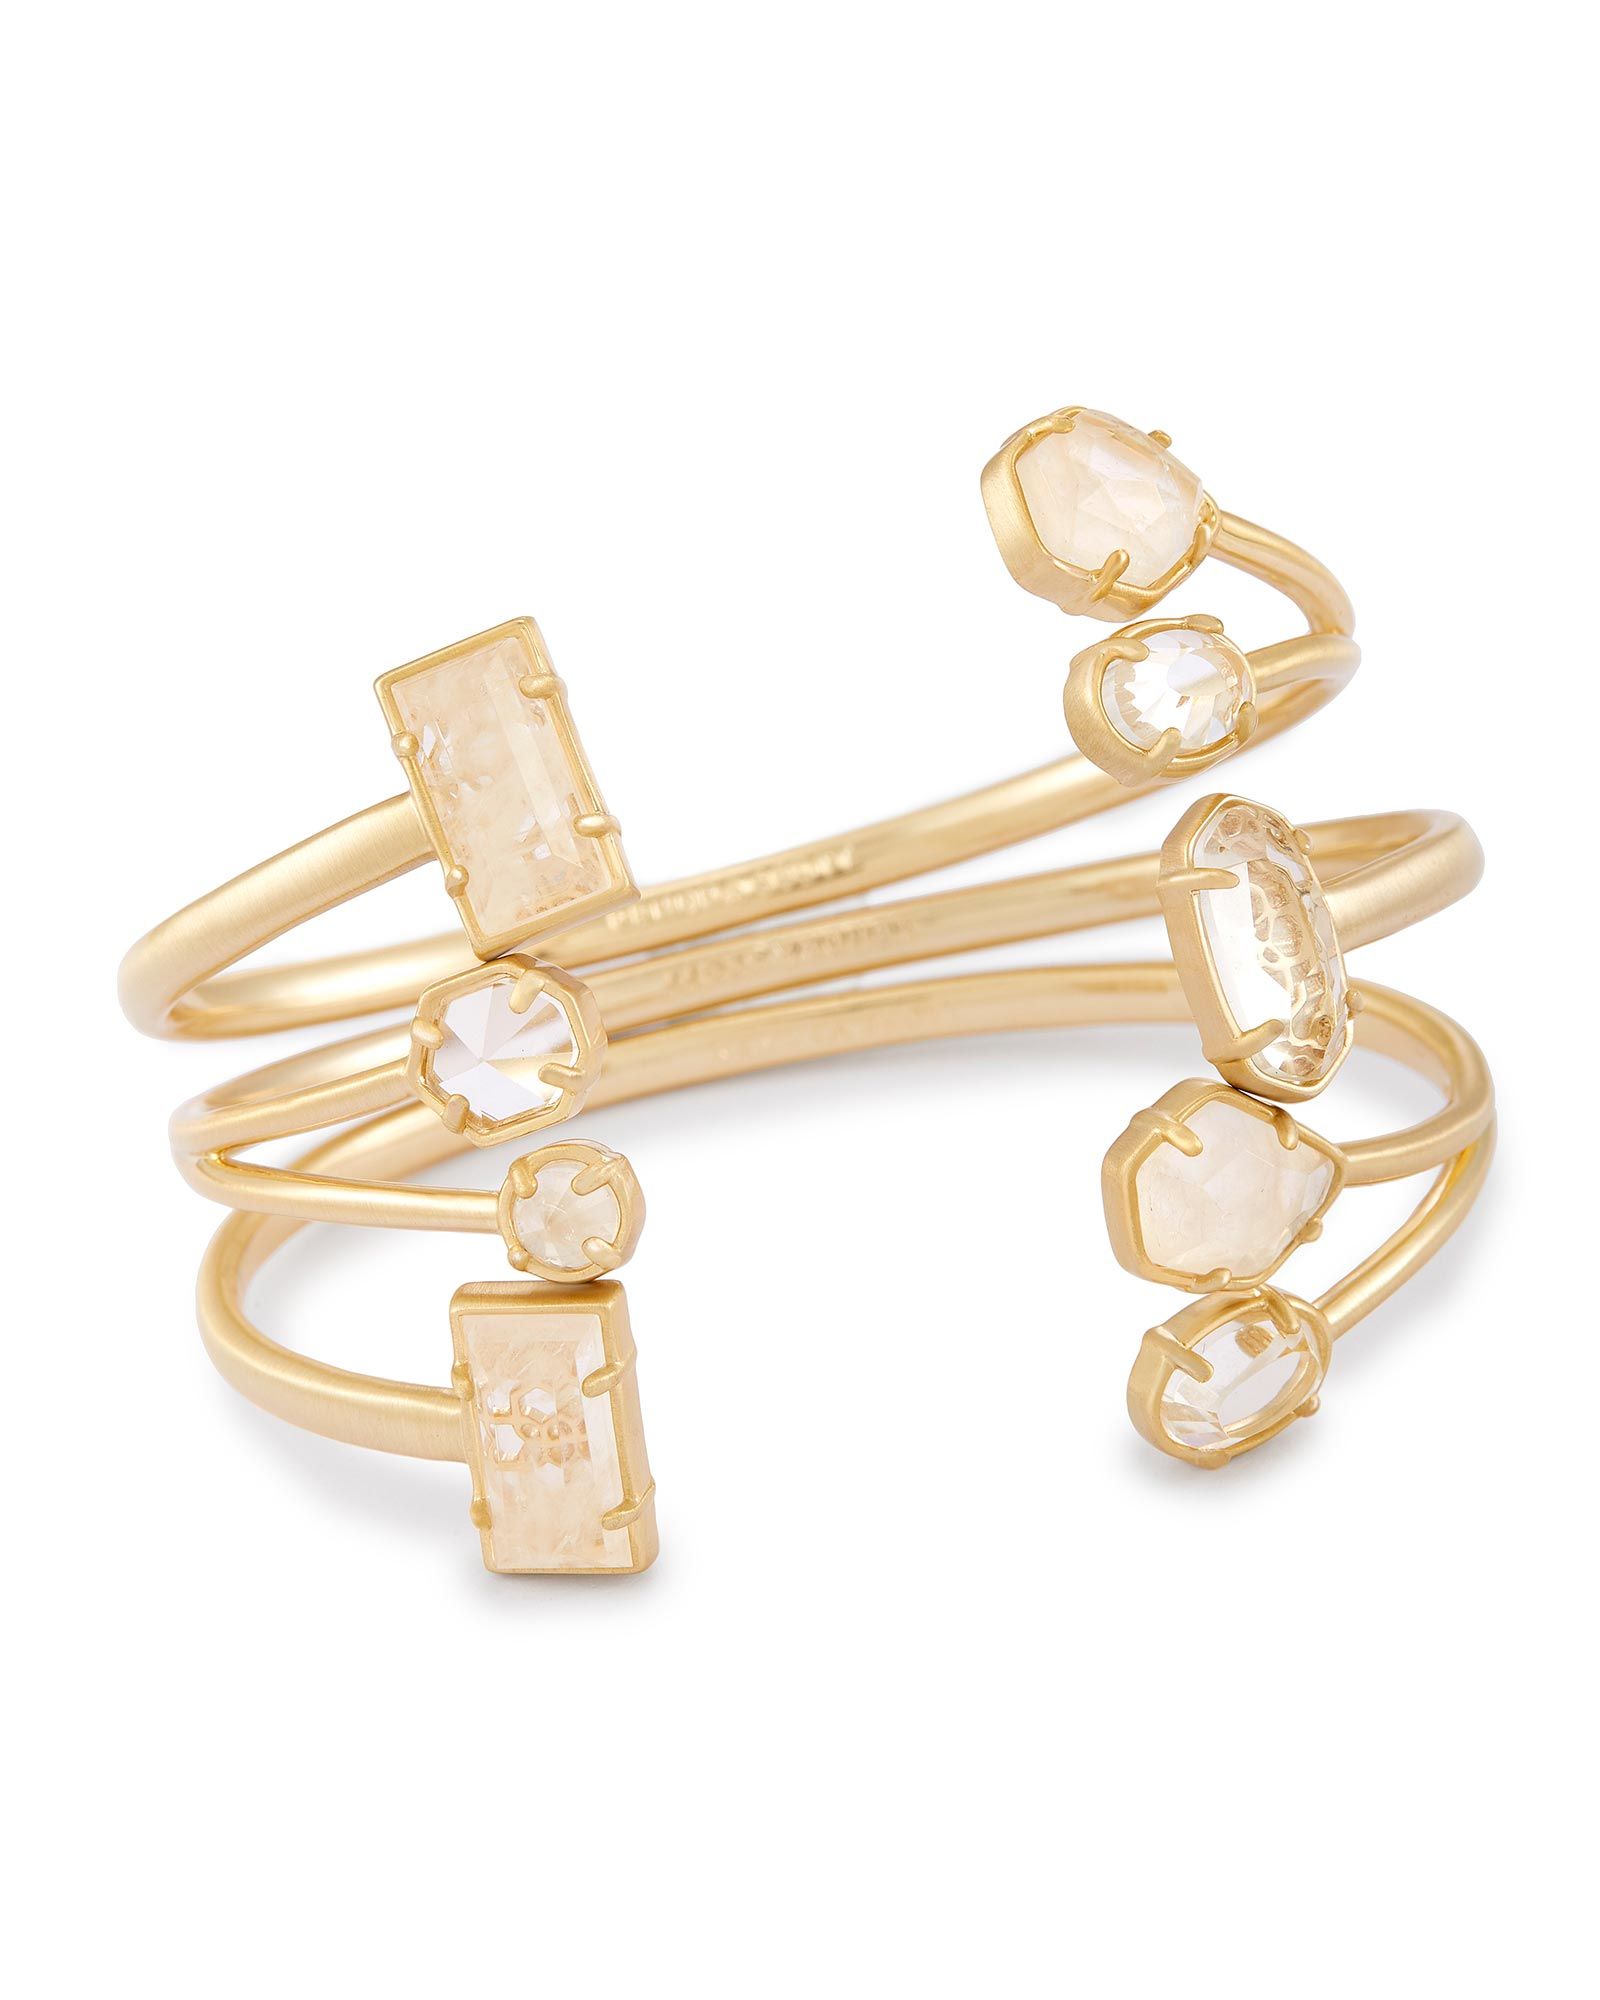 Cammy Pinch Bracelet Set in Gold | Kendra Scott